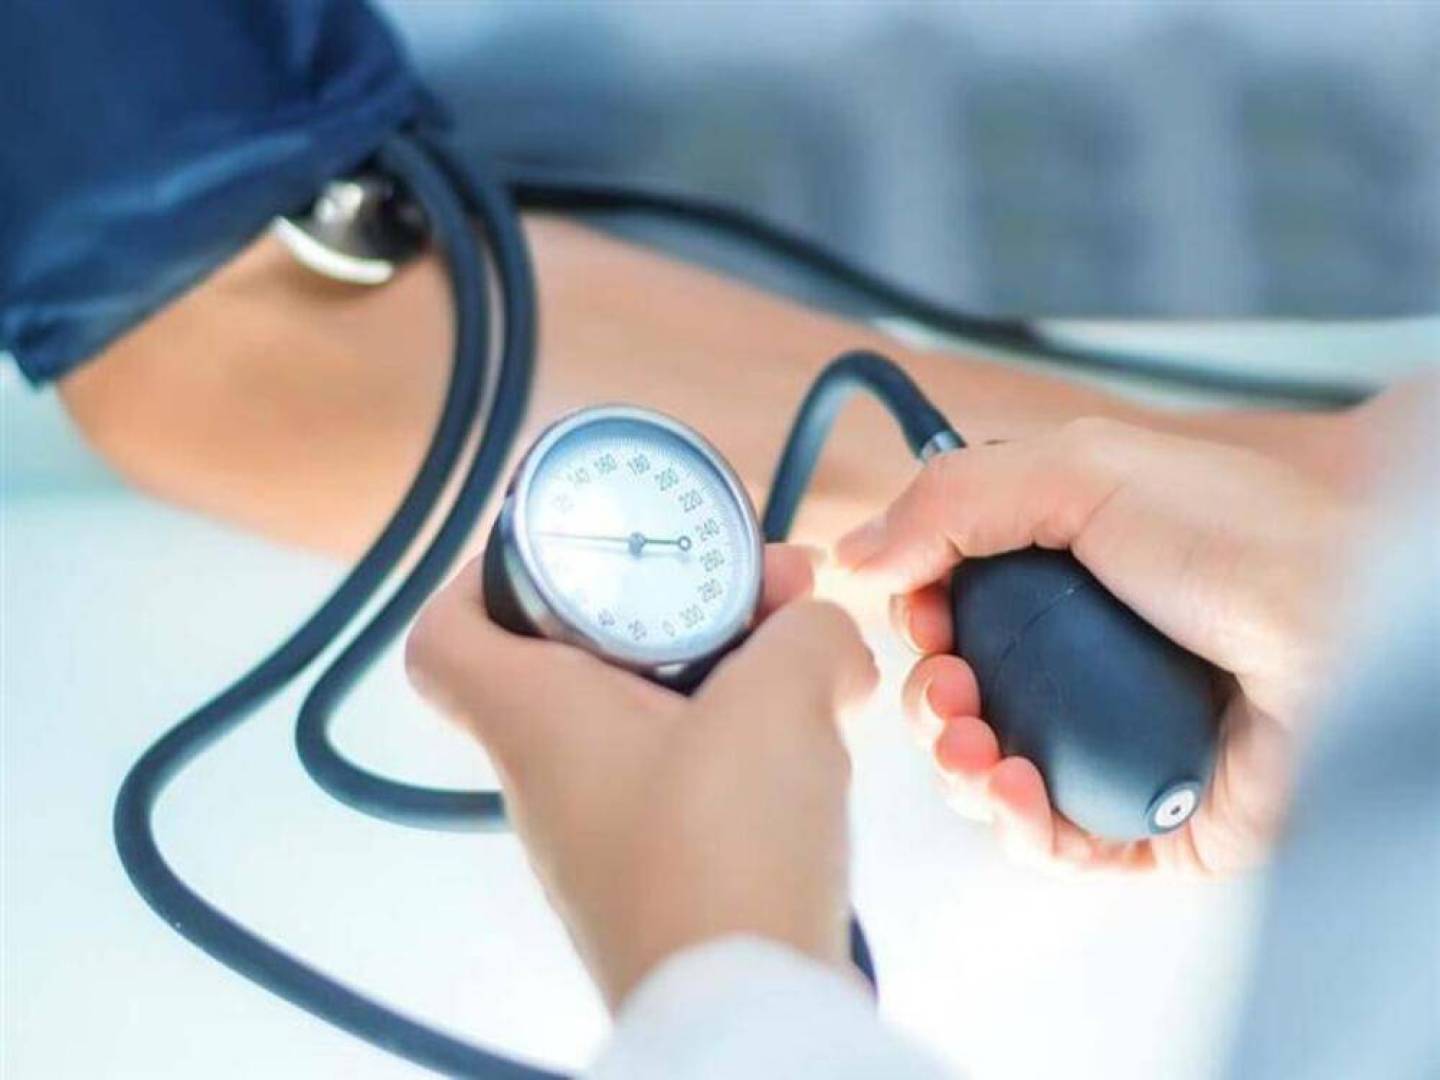 ارتفاع ضغط الدم: كيف تعتني بنفسك؟